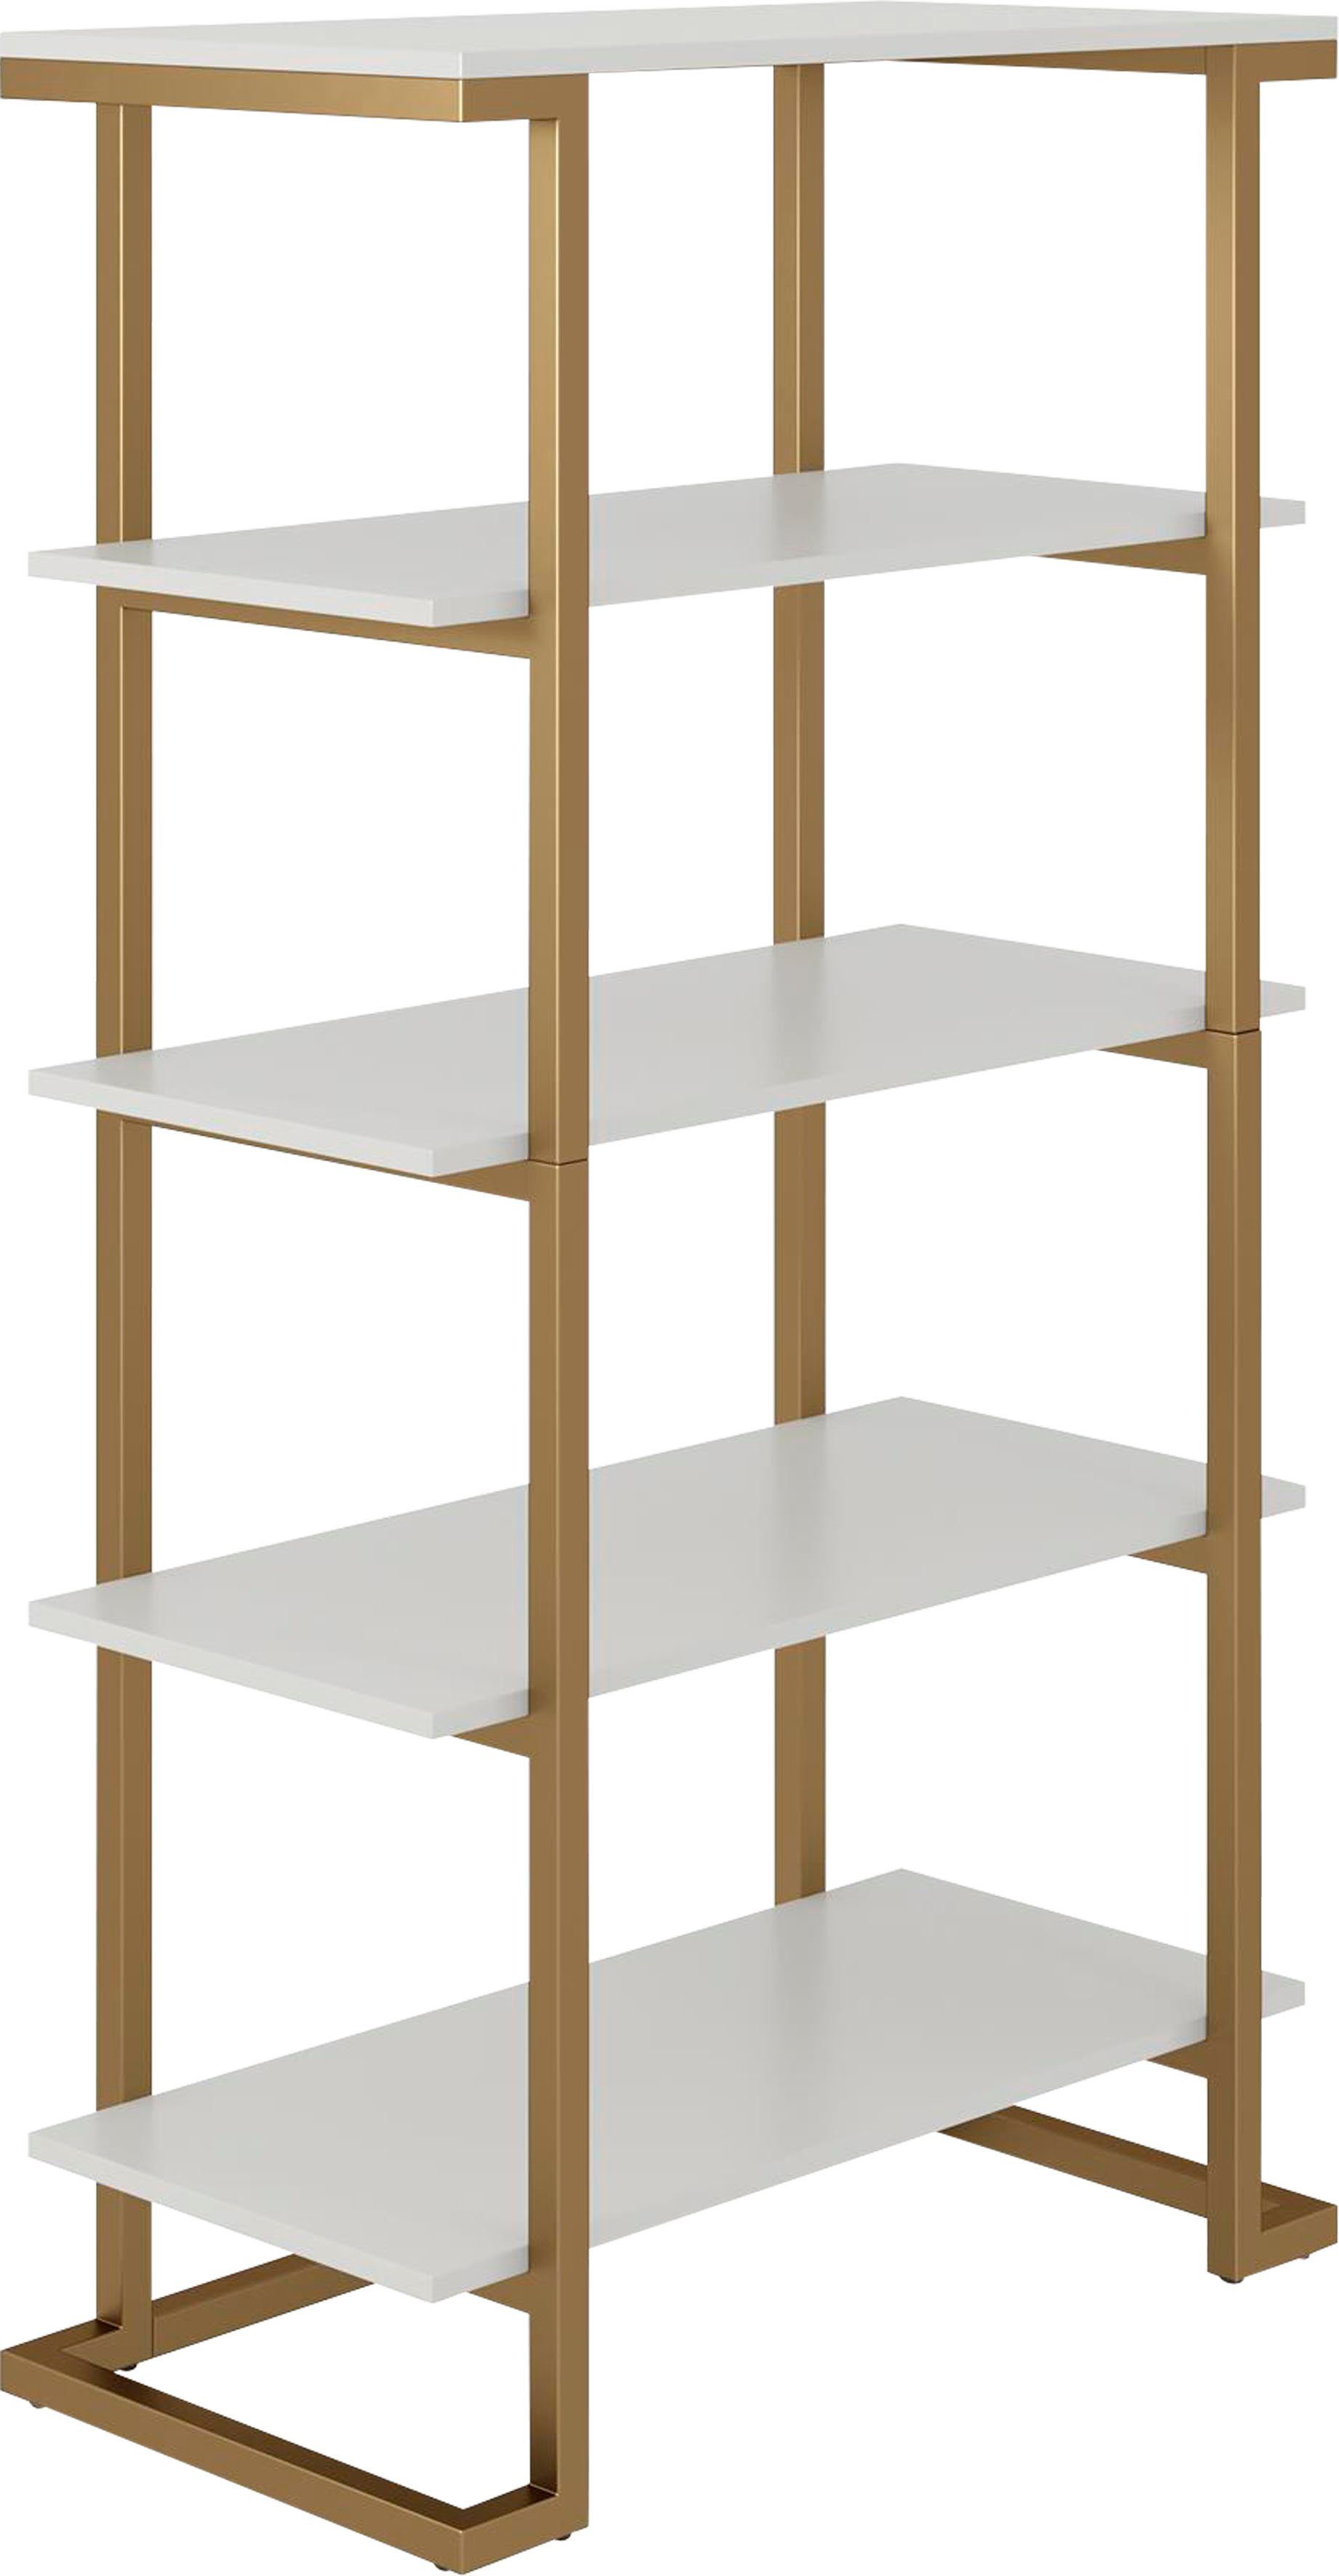 cosmoliving by cosmopolitan boekenkast camila 5 planken in houtlook, metalen frame, breedte 76,5 cm, hoogte 141 cm (1 stuk) wit